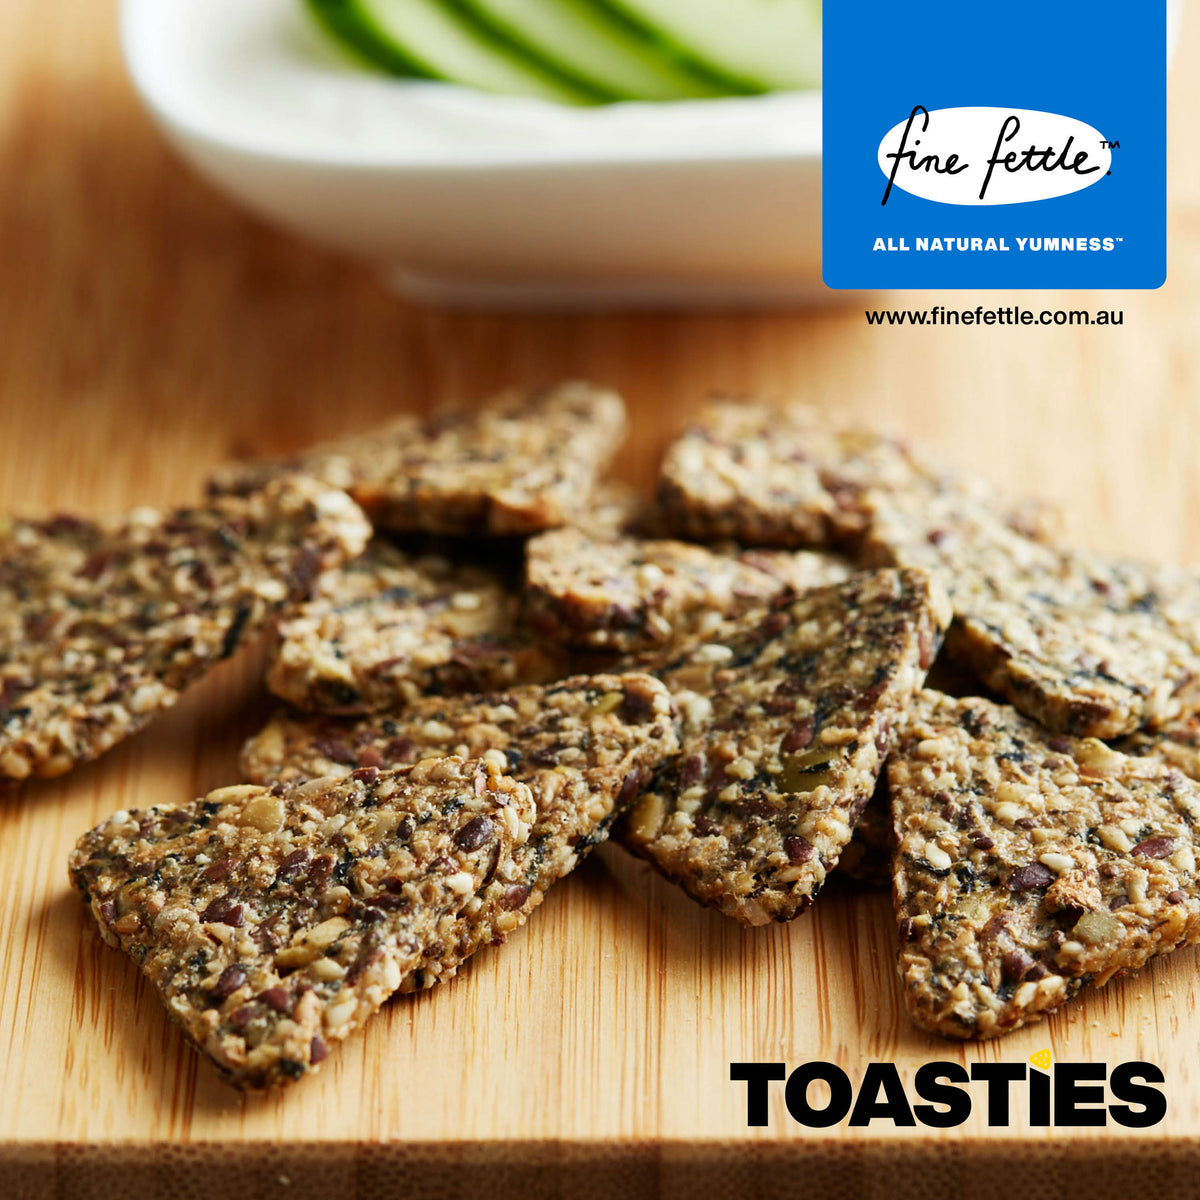 Seaweed Toasties - Healthy Crackers